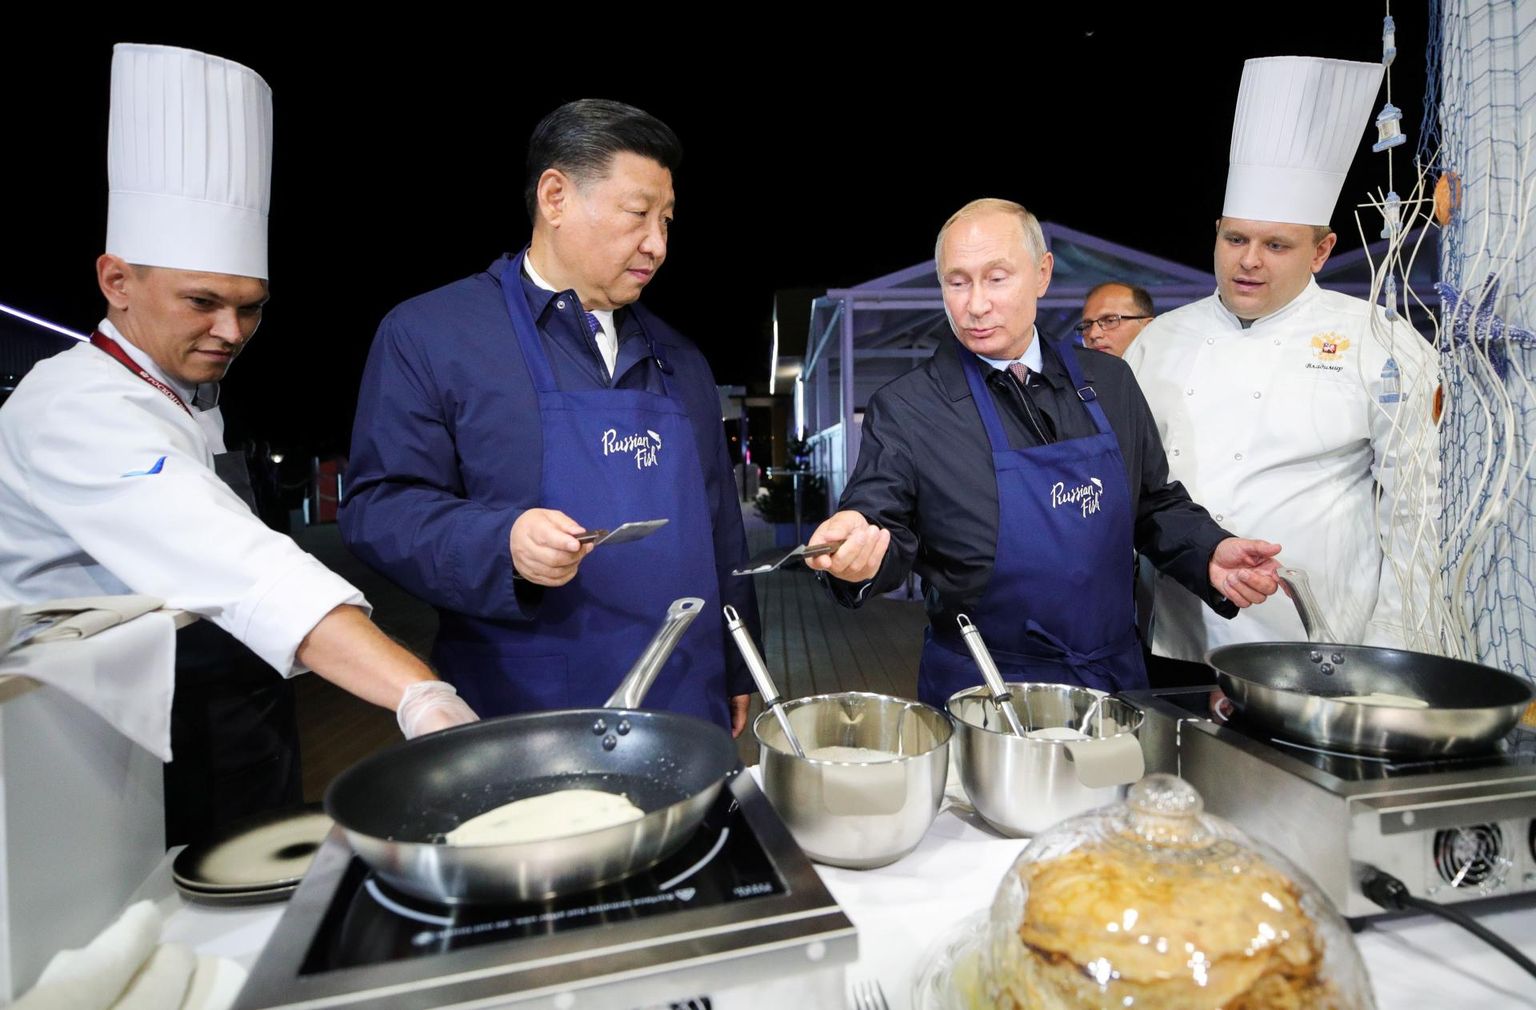 Hiina president Xi Jinping ja Venemaa president Vladimir Putin haarasid põlled ja hakkasid pannkooke küpsetama.